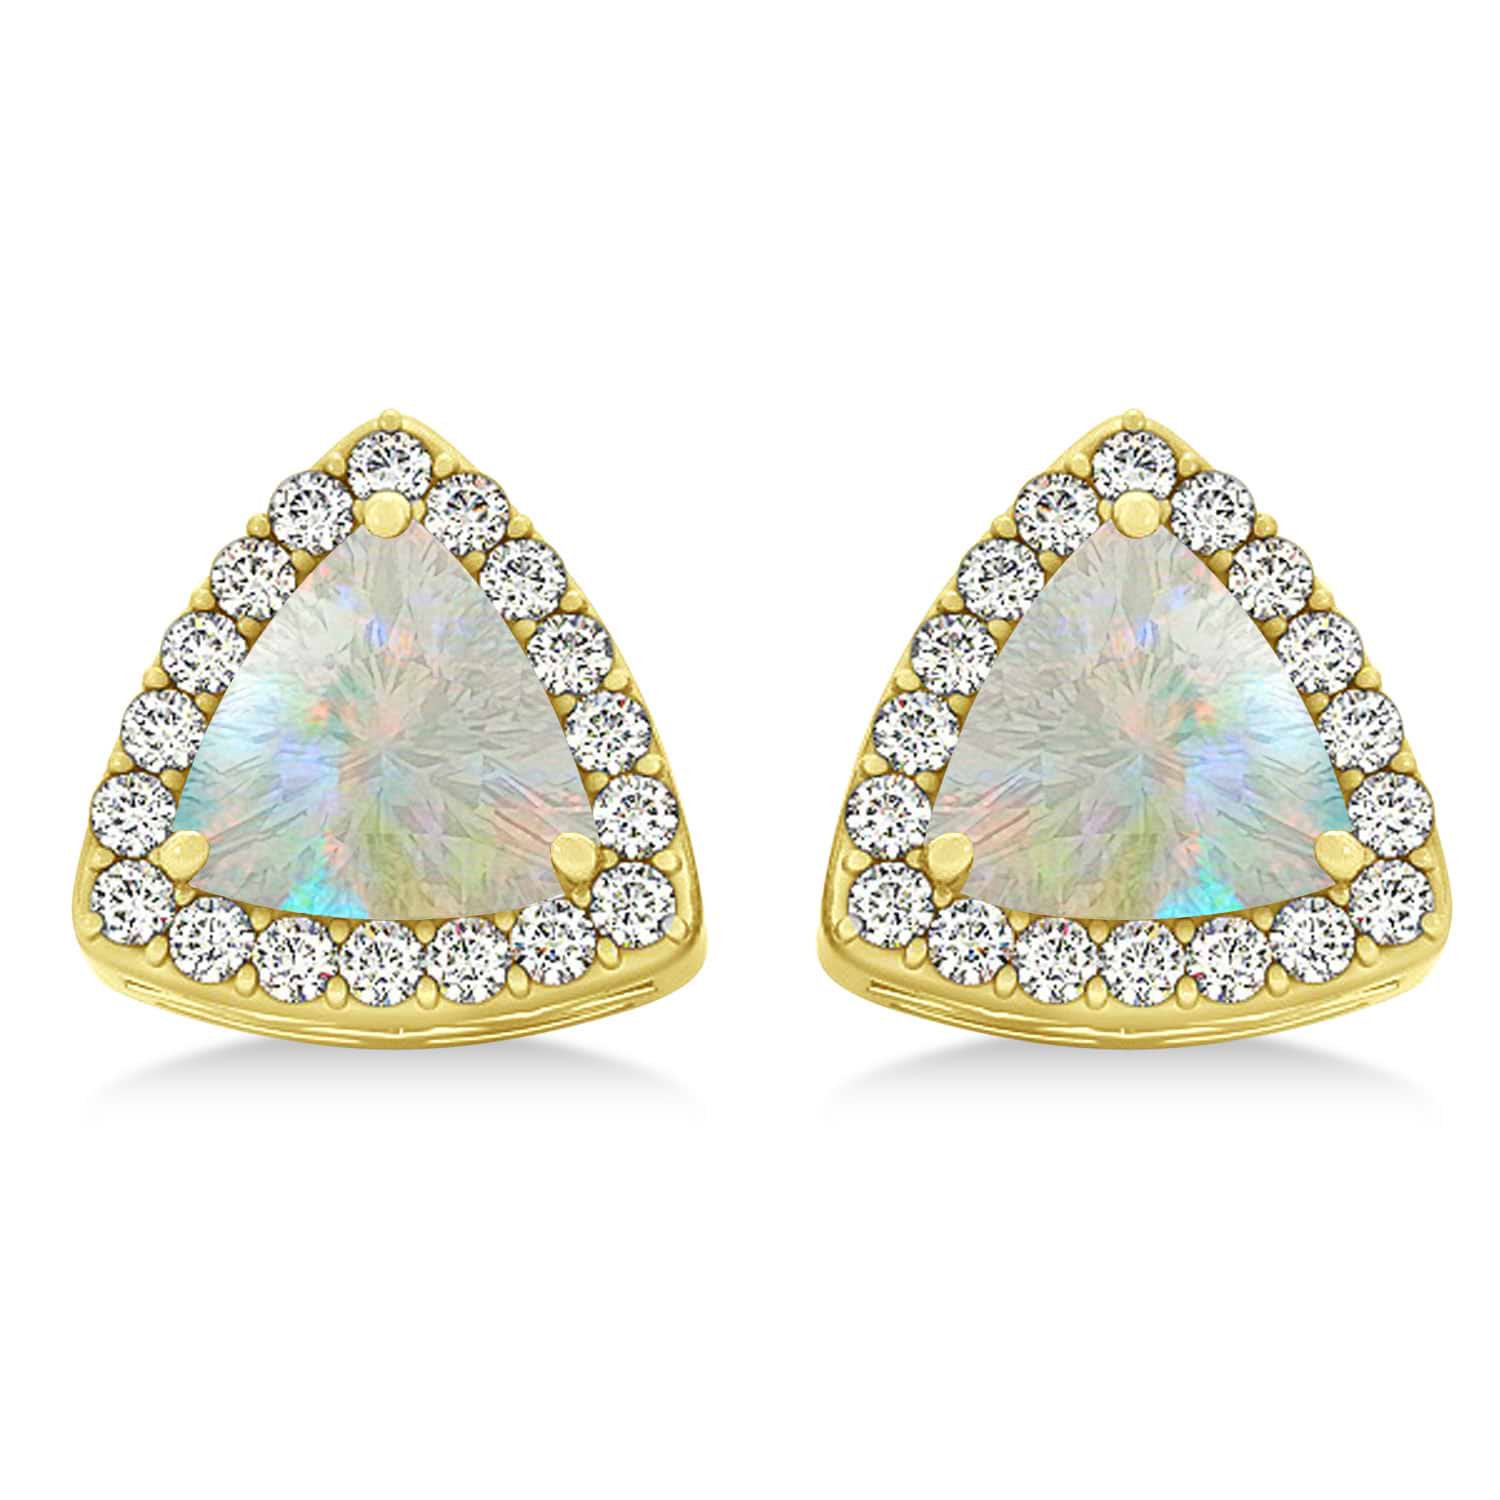 Trilliant Cut Opal & Diamond Halo Earrings 14k Yellow Gold (0.93ct)